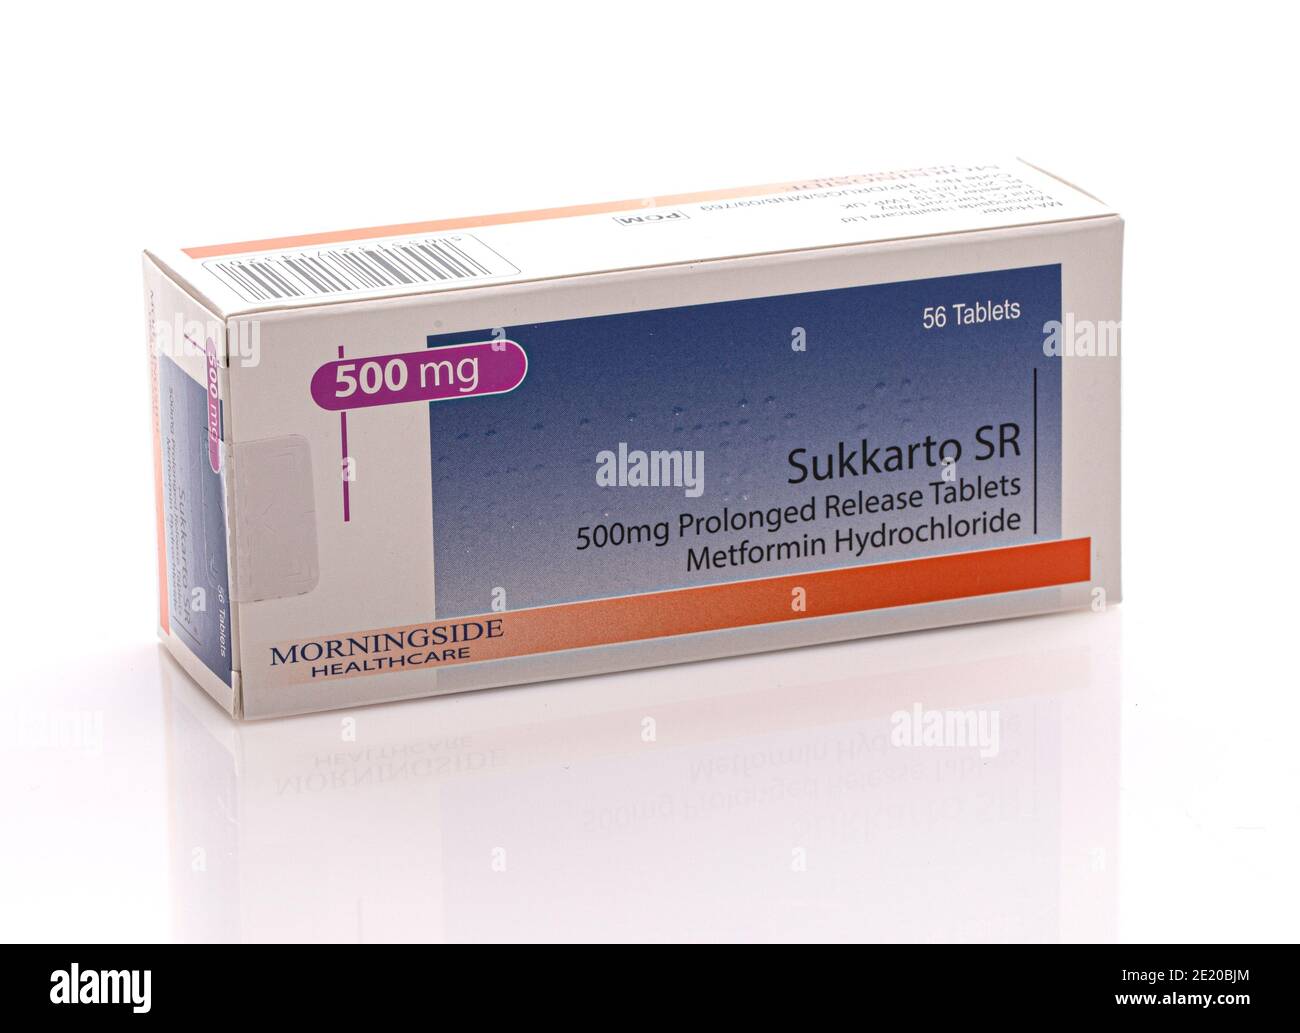 SWINDON, Großbritannien - 10. JANUAR 2021: Paket von Sukkarto SR Metformin Hydrochlorid 500mg lang anhaltende Freisetzung Tabletten Stockfoto